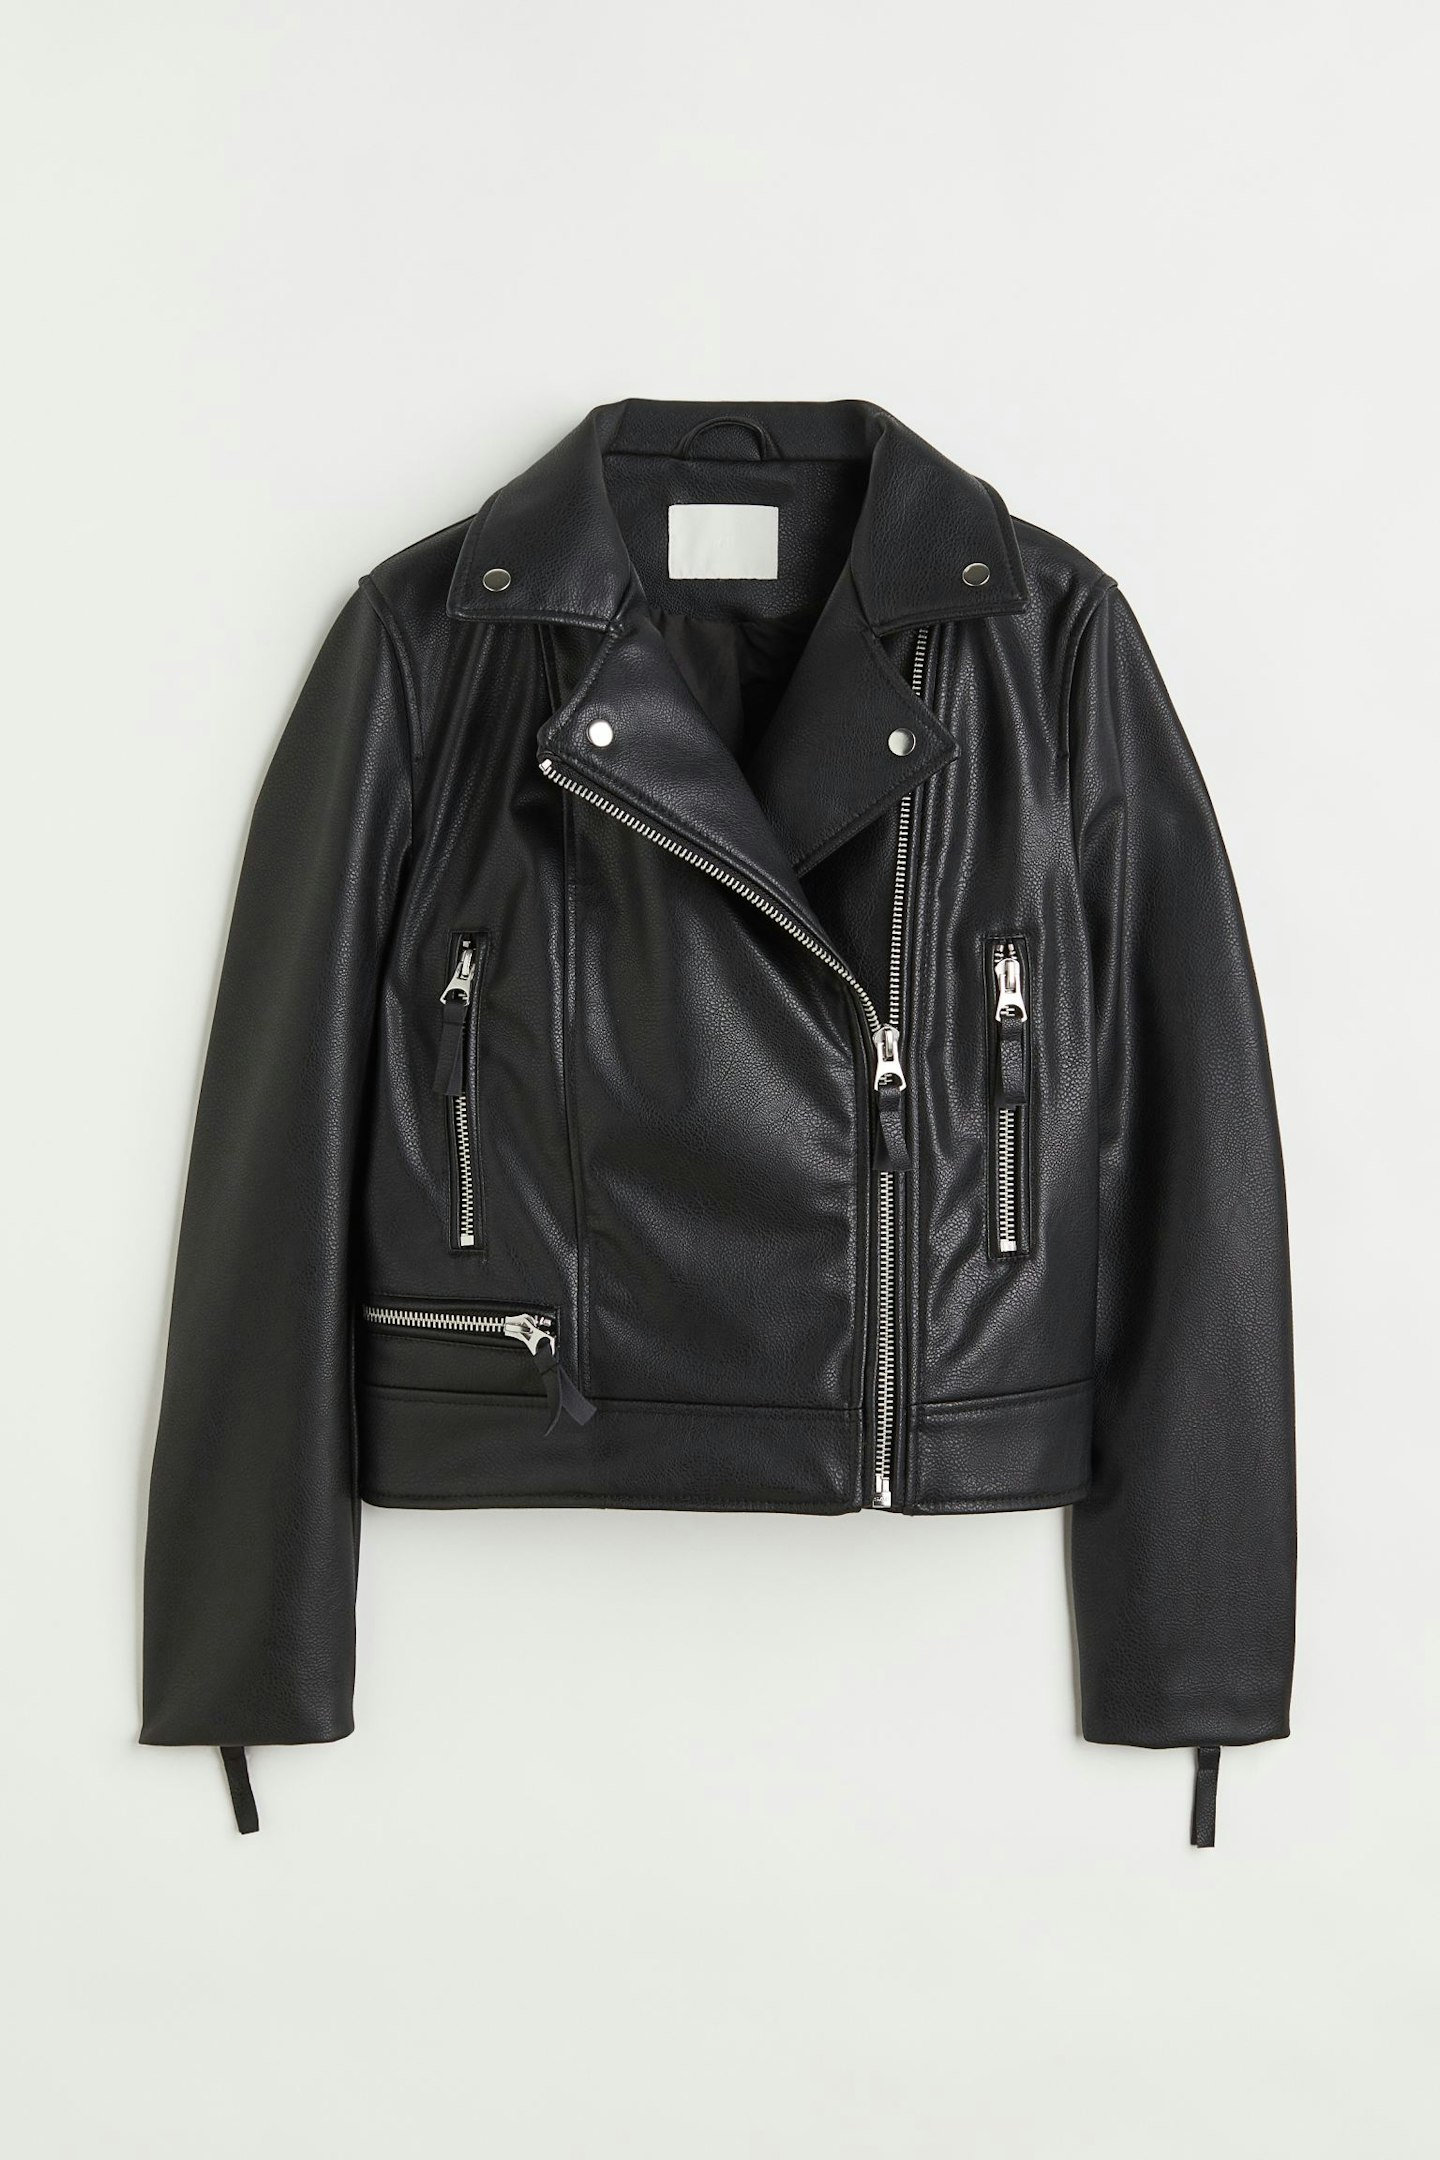 H&M biker jacket